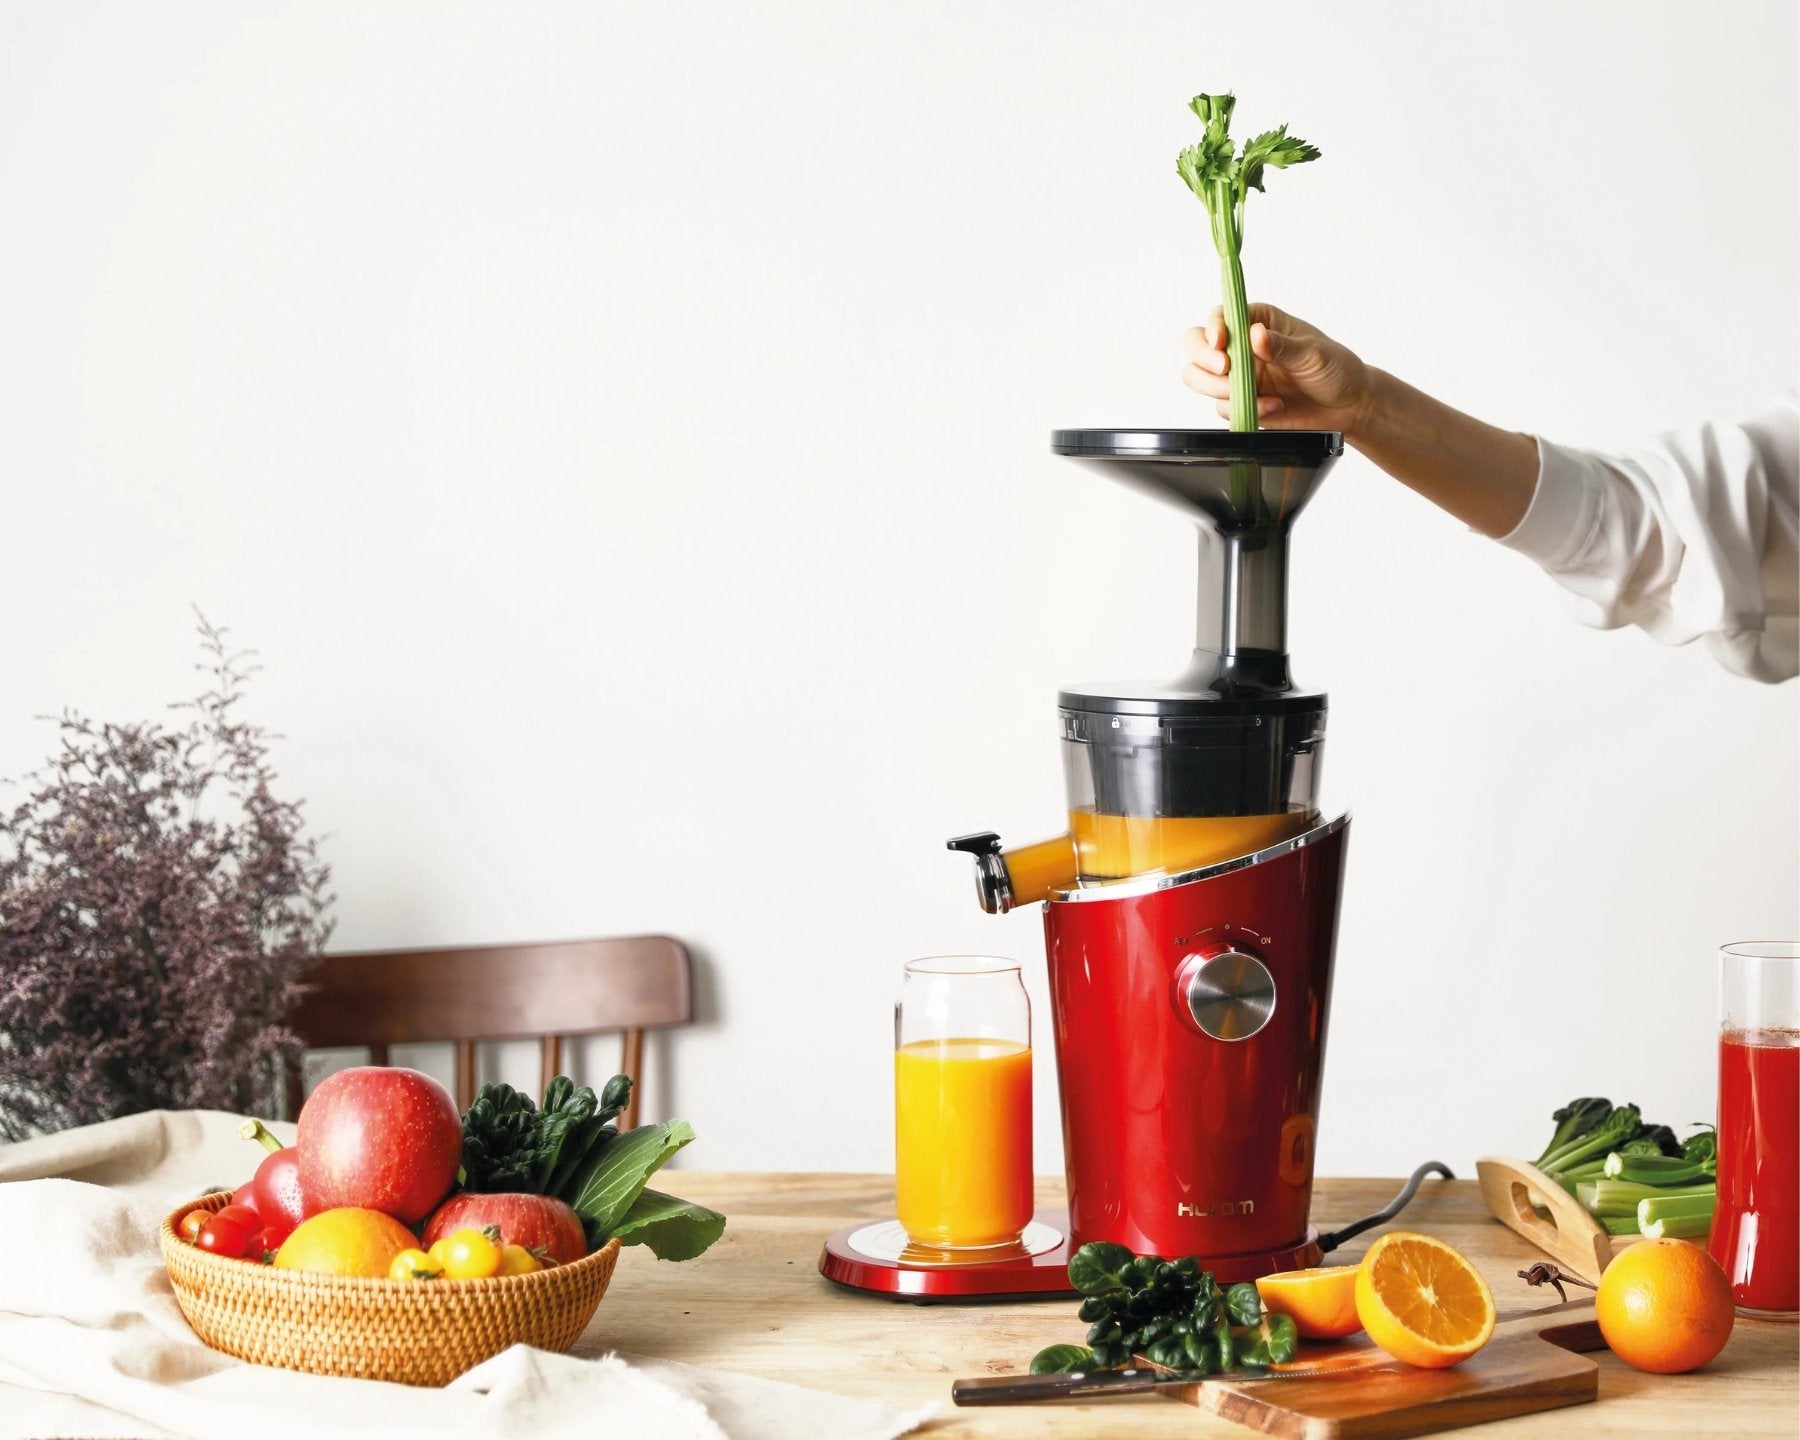 HUROM Slow Juicer H100 - kitchen-more.ch, kostenloser Versand in der ganzen Schweiz